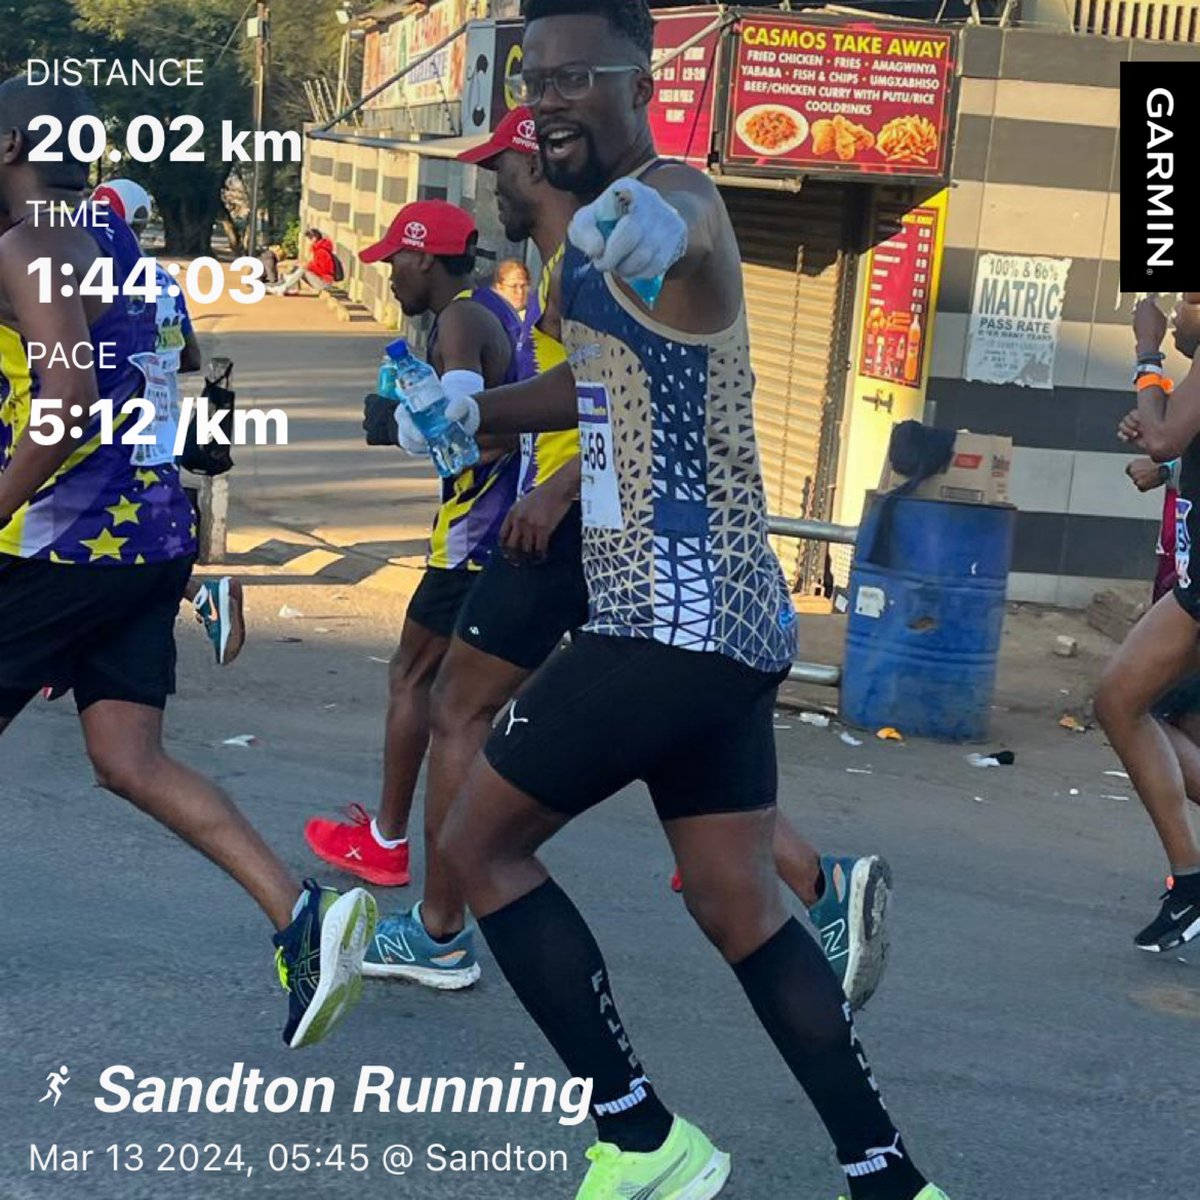 Midweek Longish Run 

#skhindigangcoaching
#SkhindiGang
#RunningWithSoleAC
#ultramarathontraining
#trusttheprocess
#insanesquad 
#traininsaneorremainthesame
Consistency. Commitment. Speed